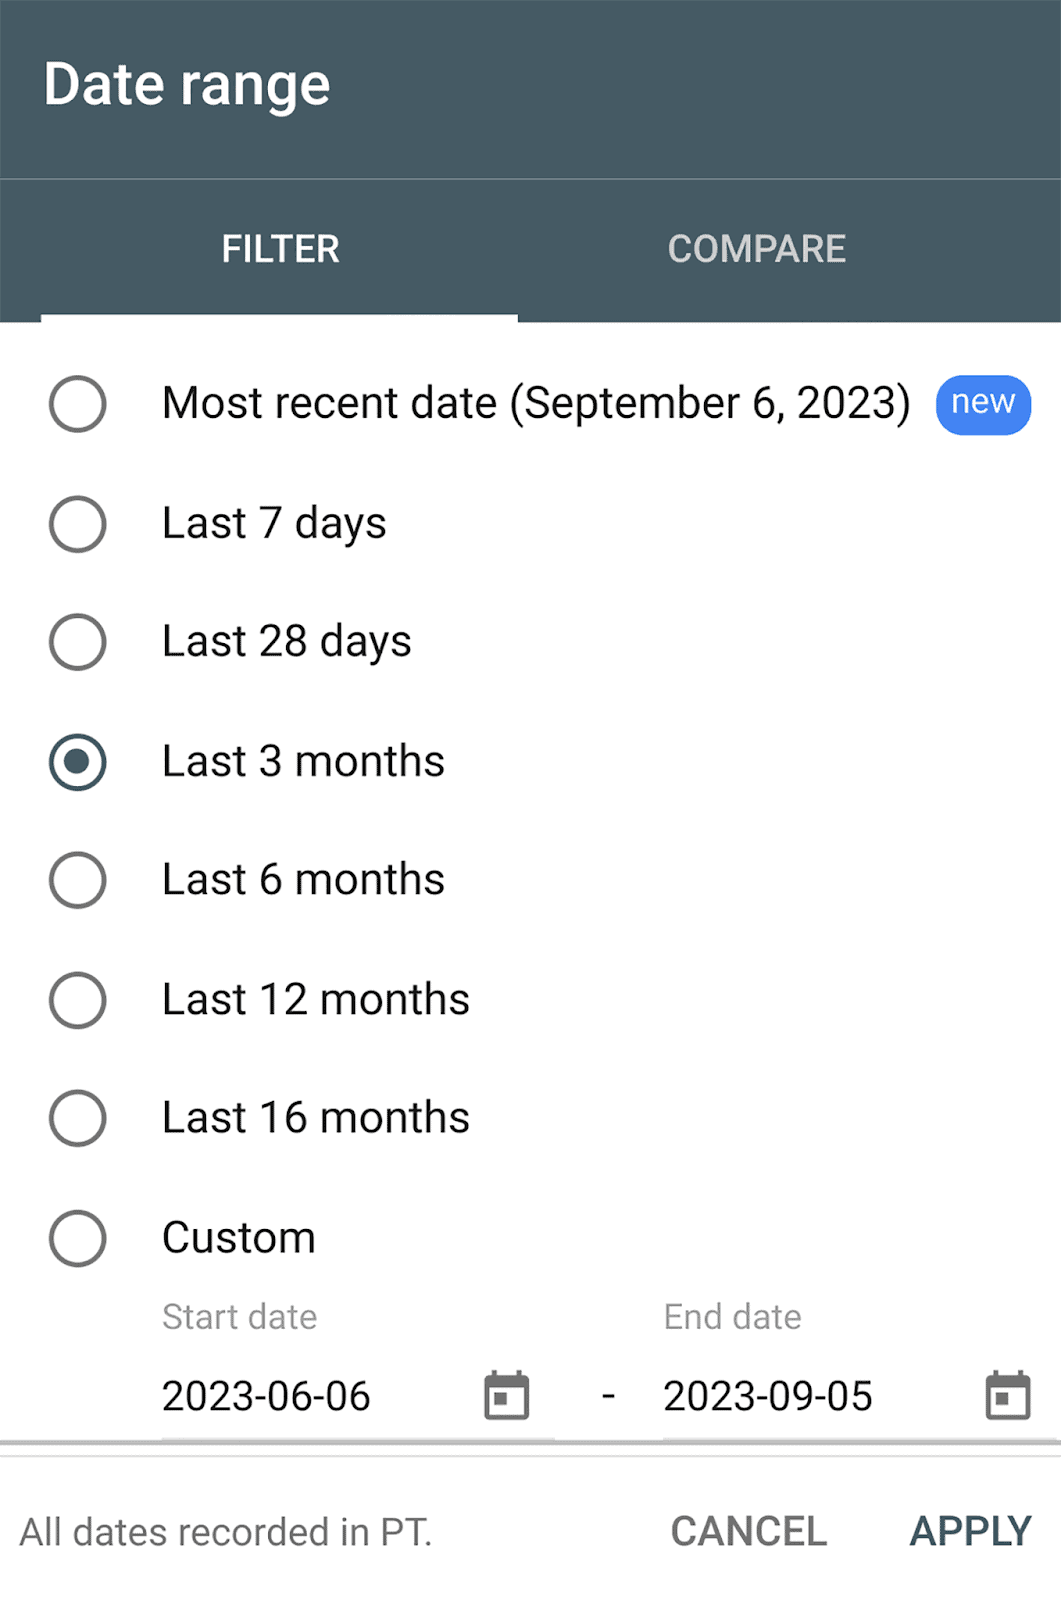 Date range to compare